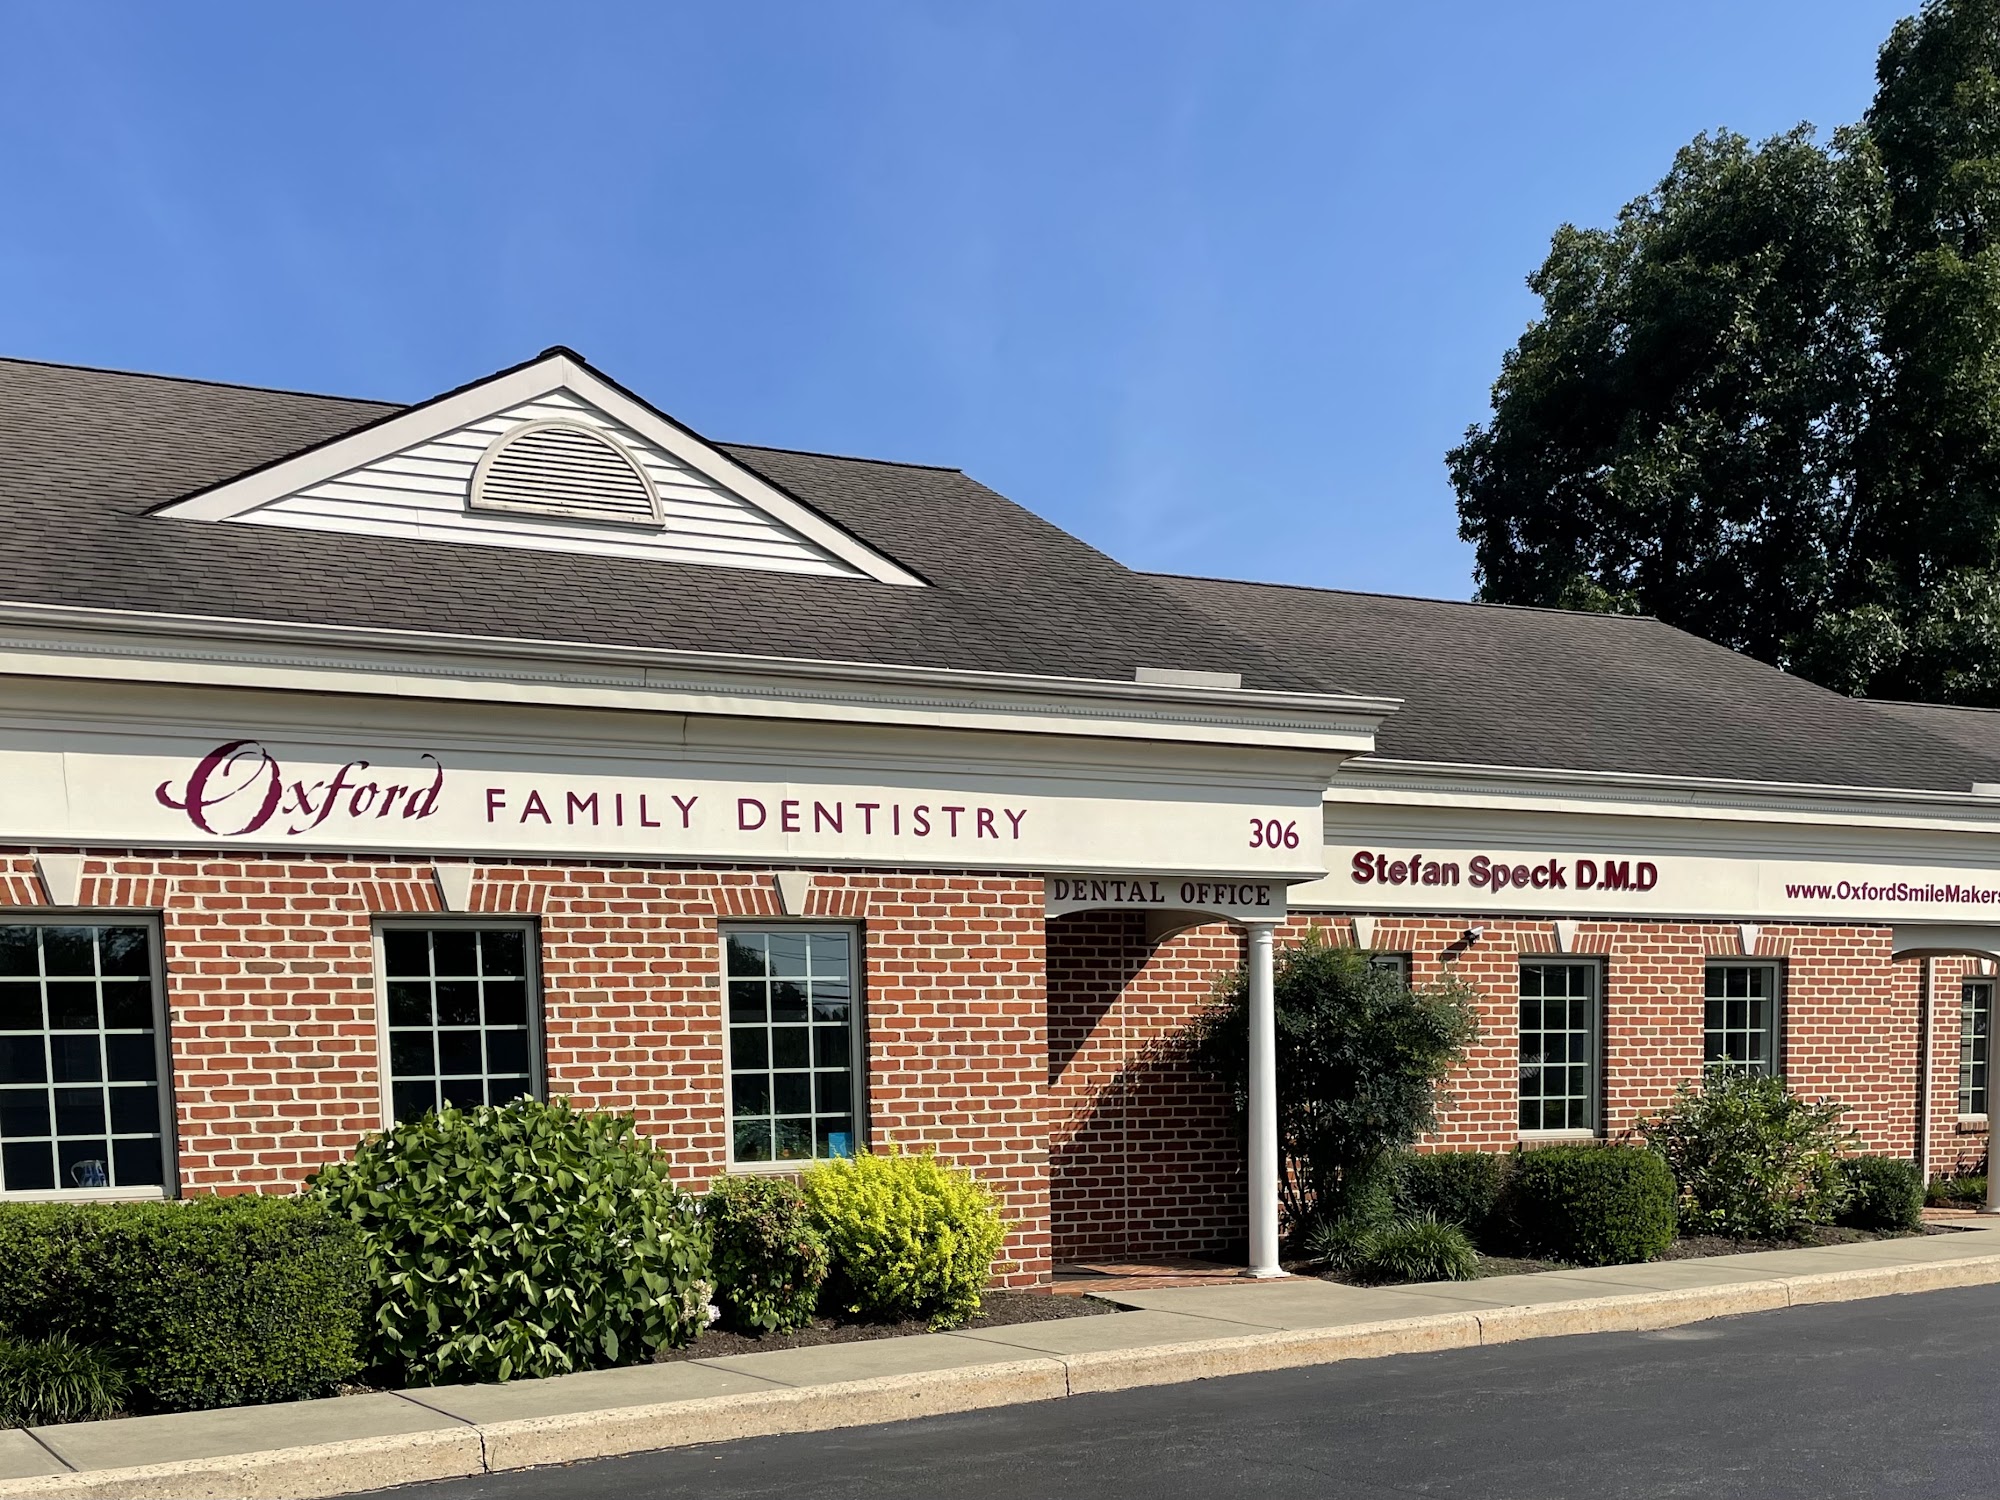 Oxford Family Dentistry: Stefan Speck DMD 306 Limestone Rd, Oxford Pennsylvania 19363